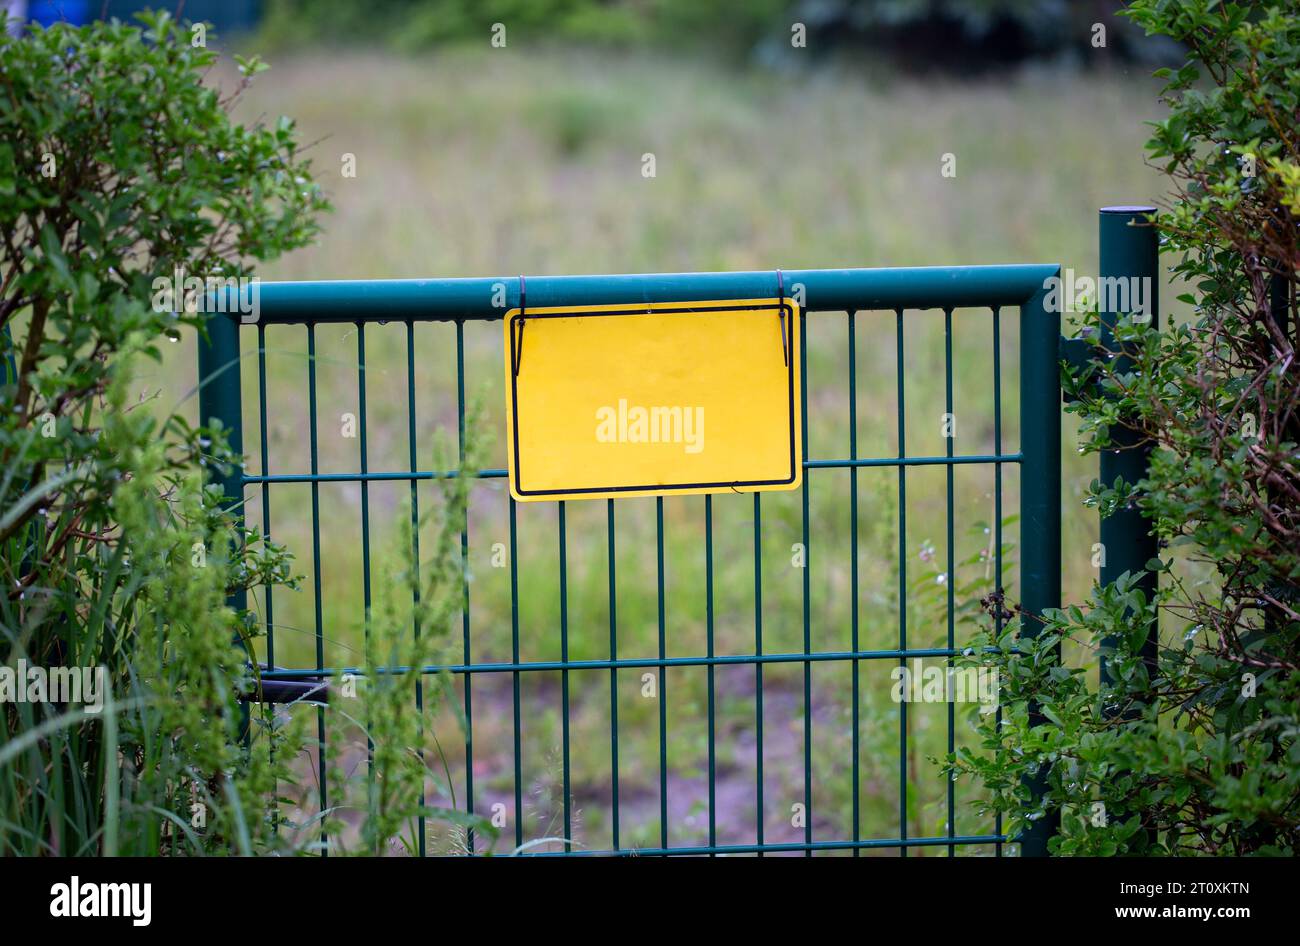 Porta del giardino in una recinzione con un cartello giallo vuoto Foto Stock